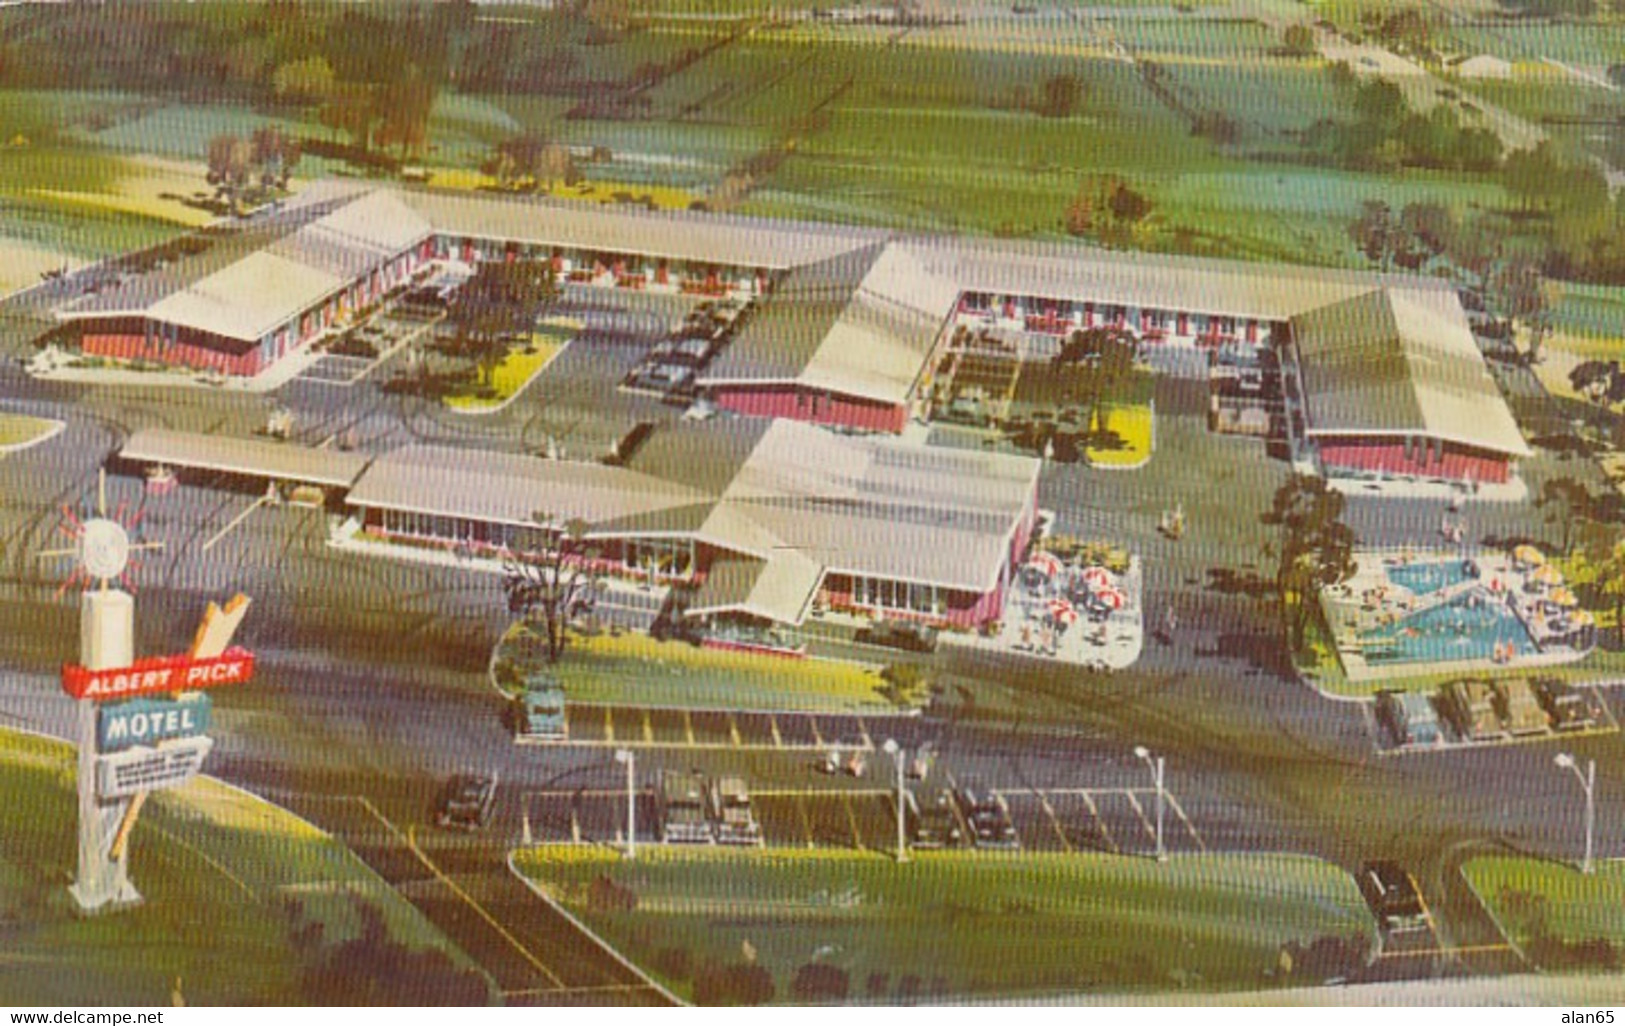 St. Louis Missouri, Route 66 Bypass, Albert Pick Motel, C1950s/60s Vintage Postcard - Ruta ''66' (Route)